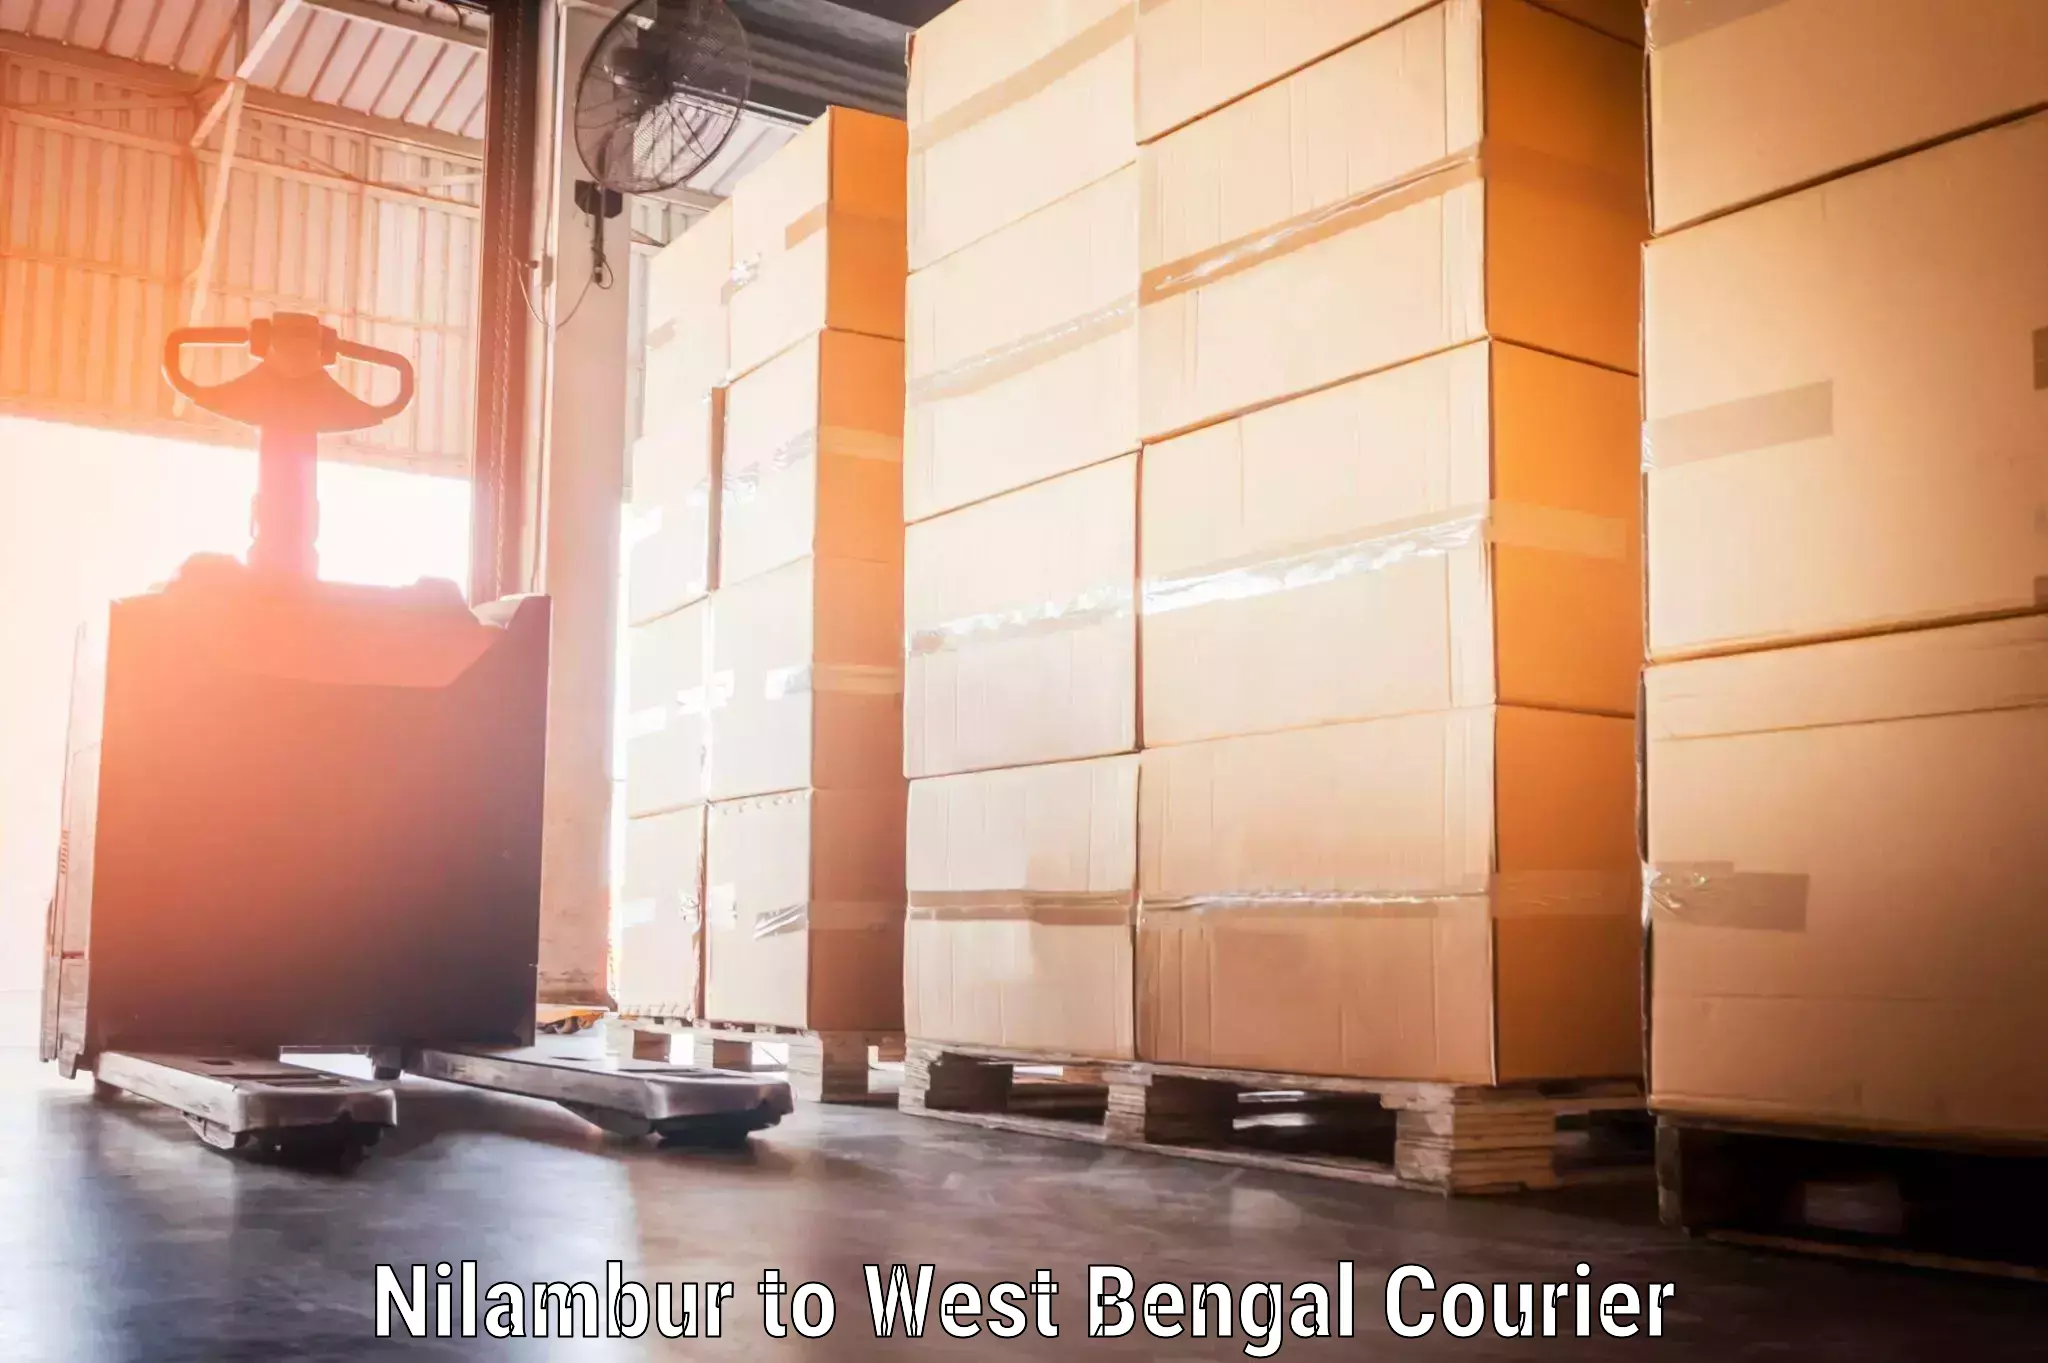 Baggage shipping schedule Nilambur to Kalyani